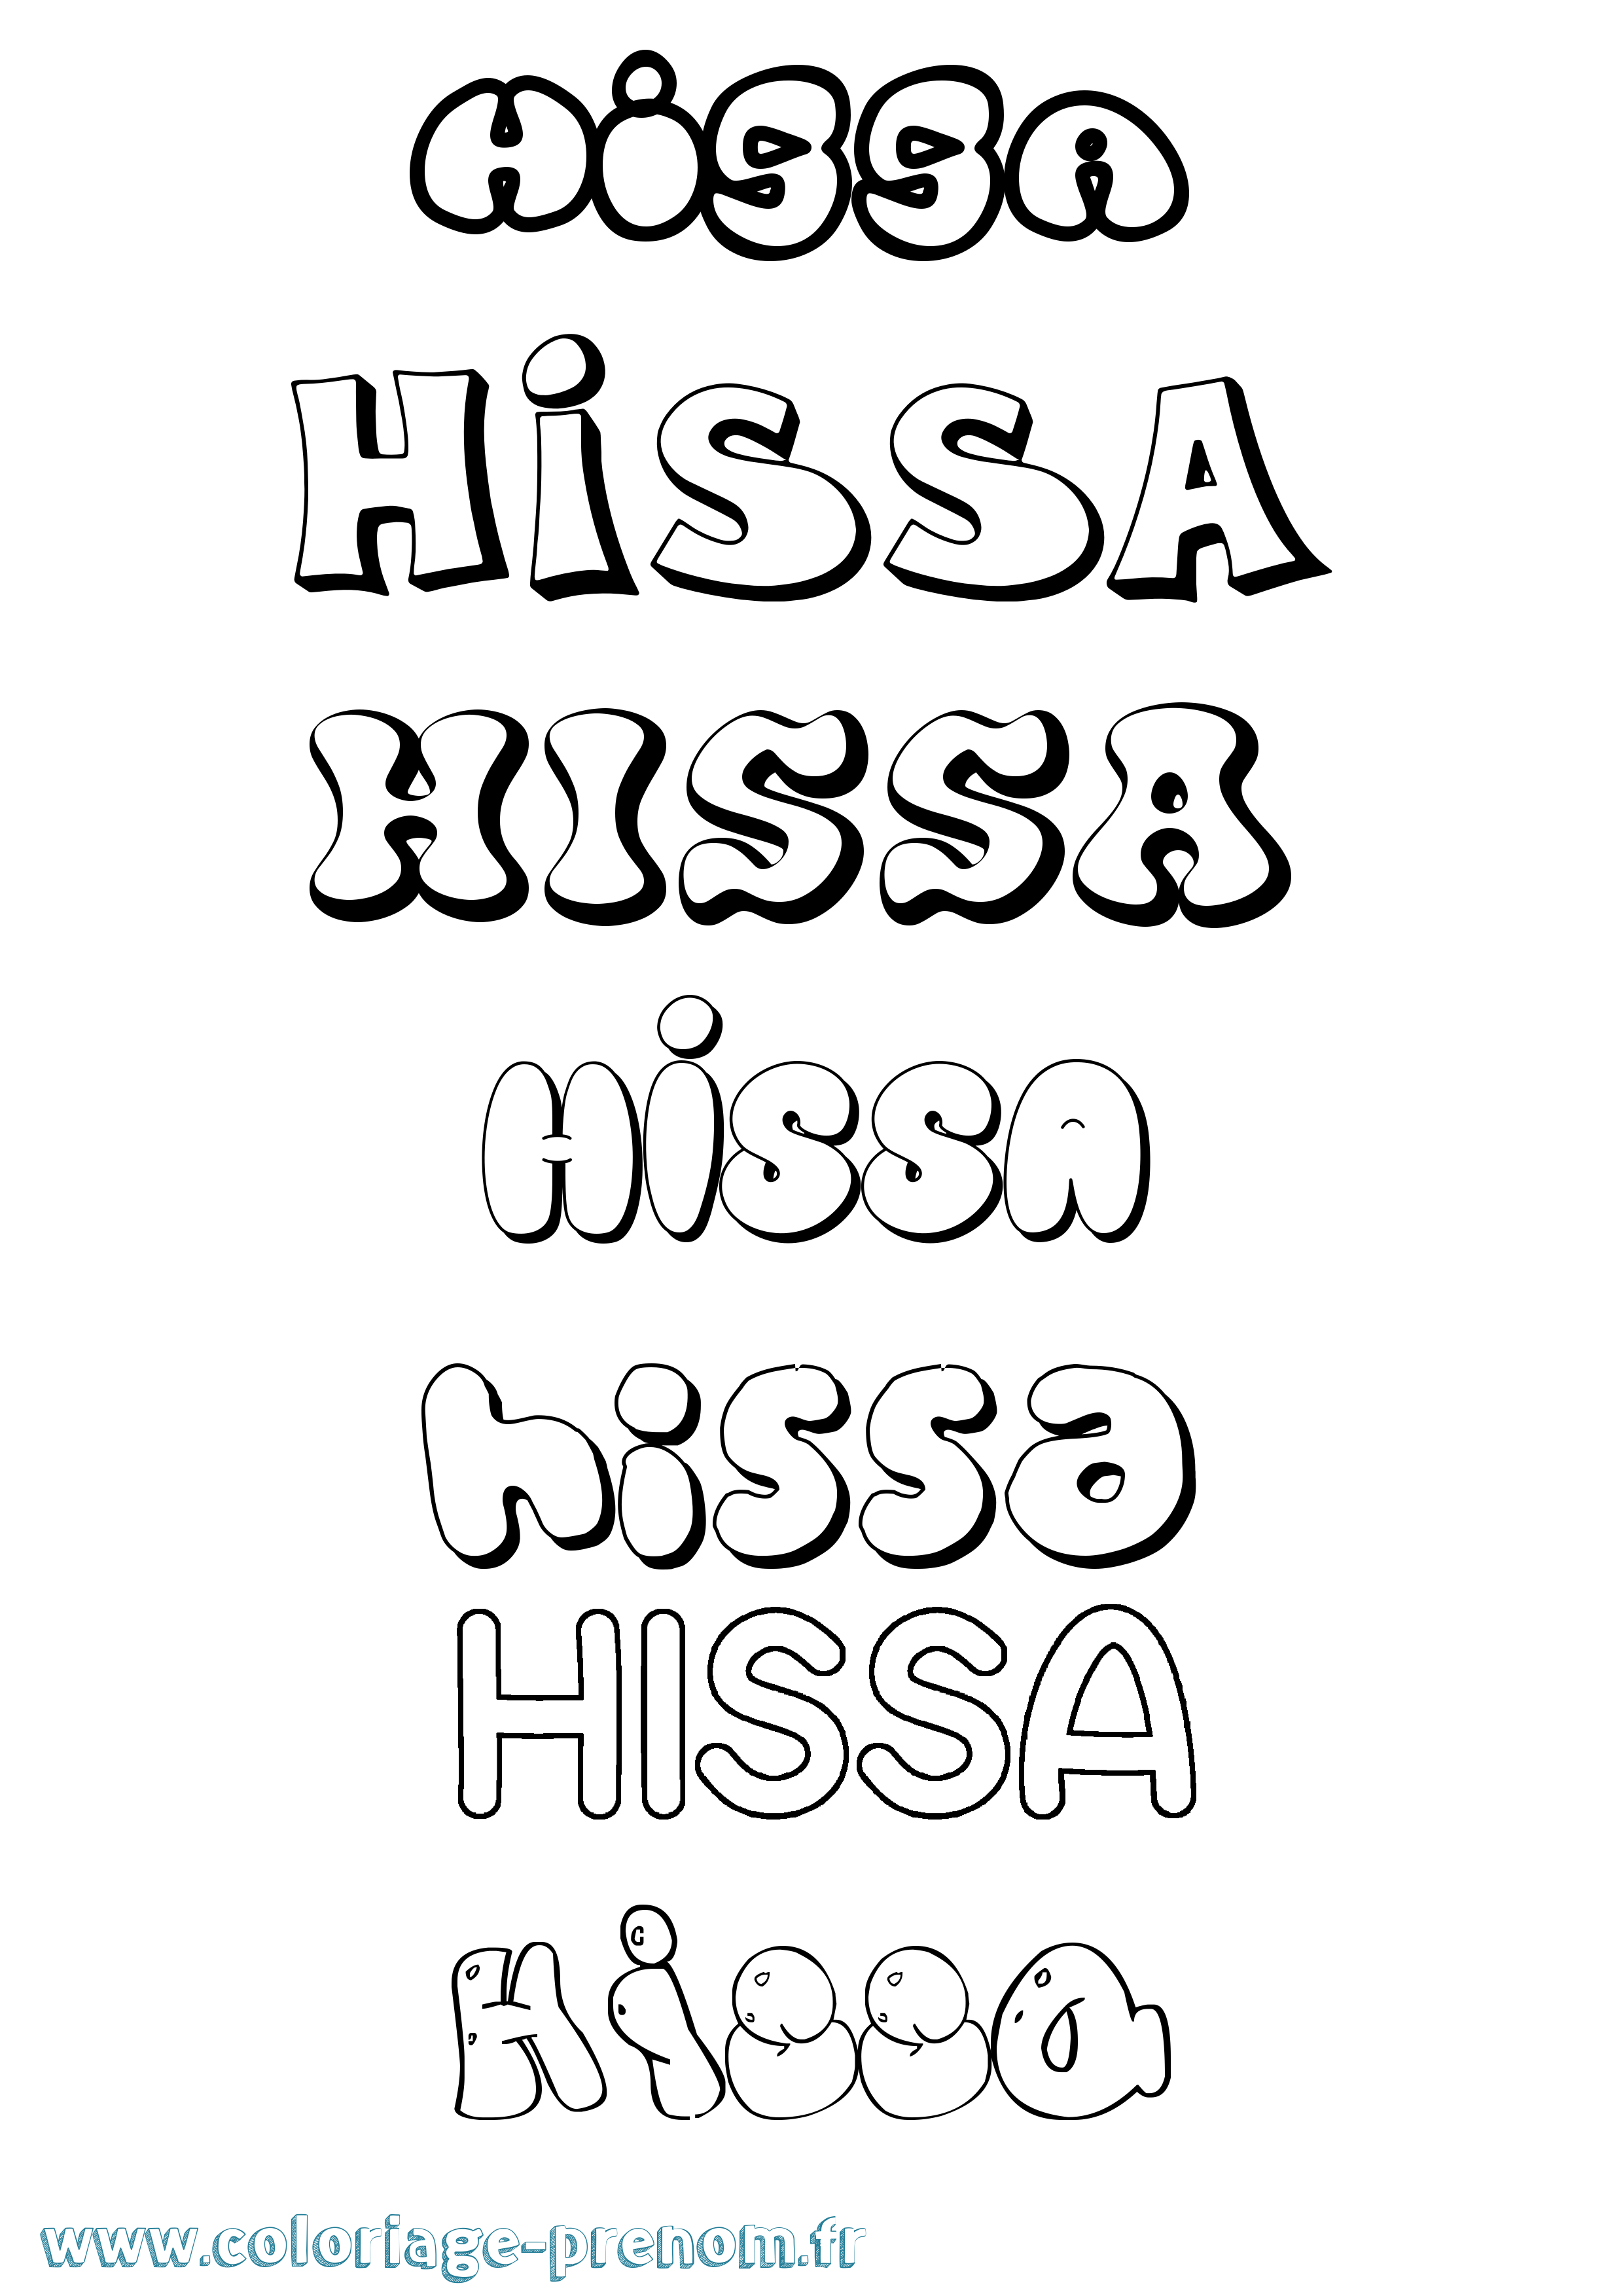 Coloriage prénom Hissa Bubble